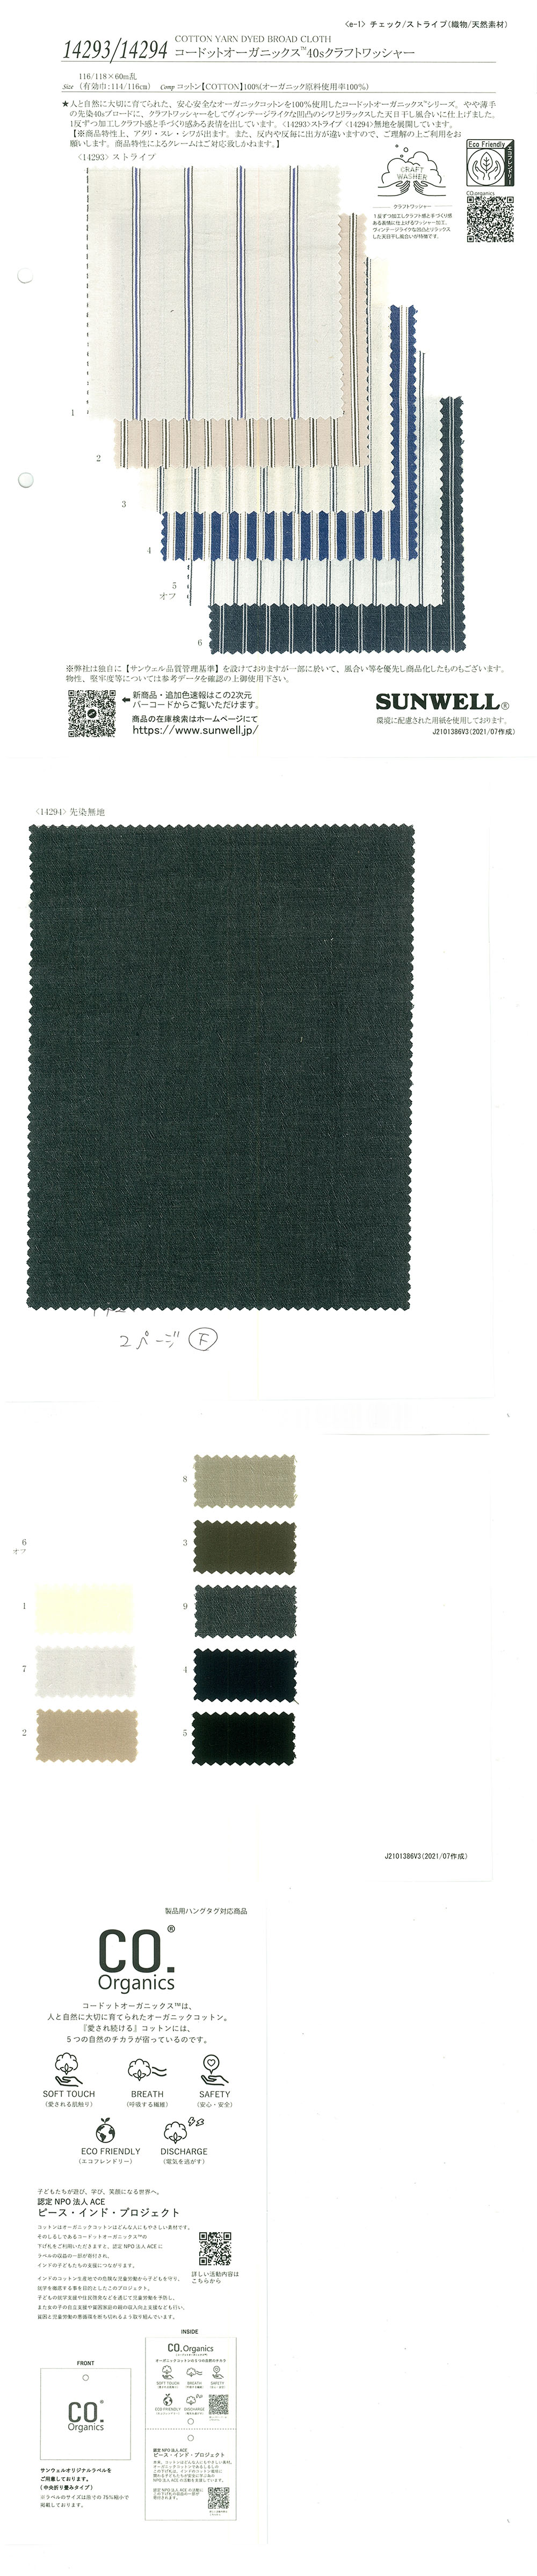 14294 Procesamiento De Arandela Artesanal De Un Solo Hilo Cordot Organics (R) 40[Fabrica Textil] SUNWELL